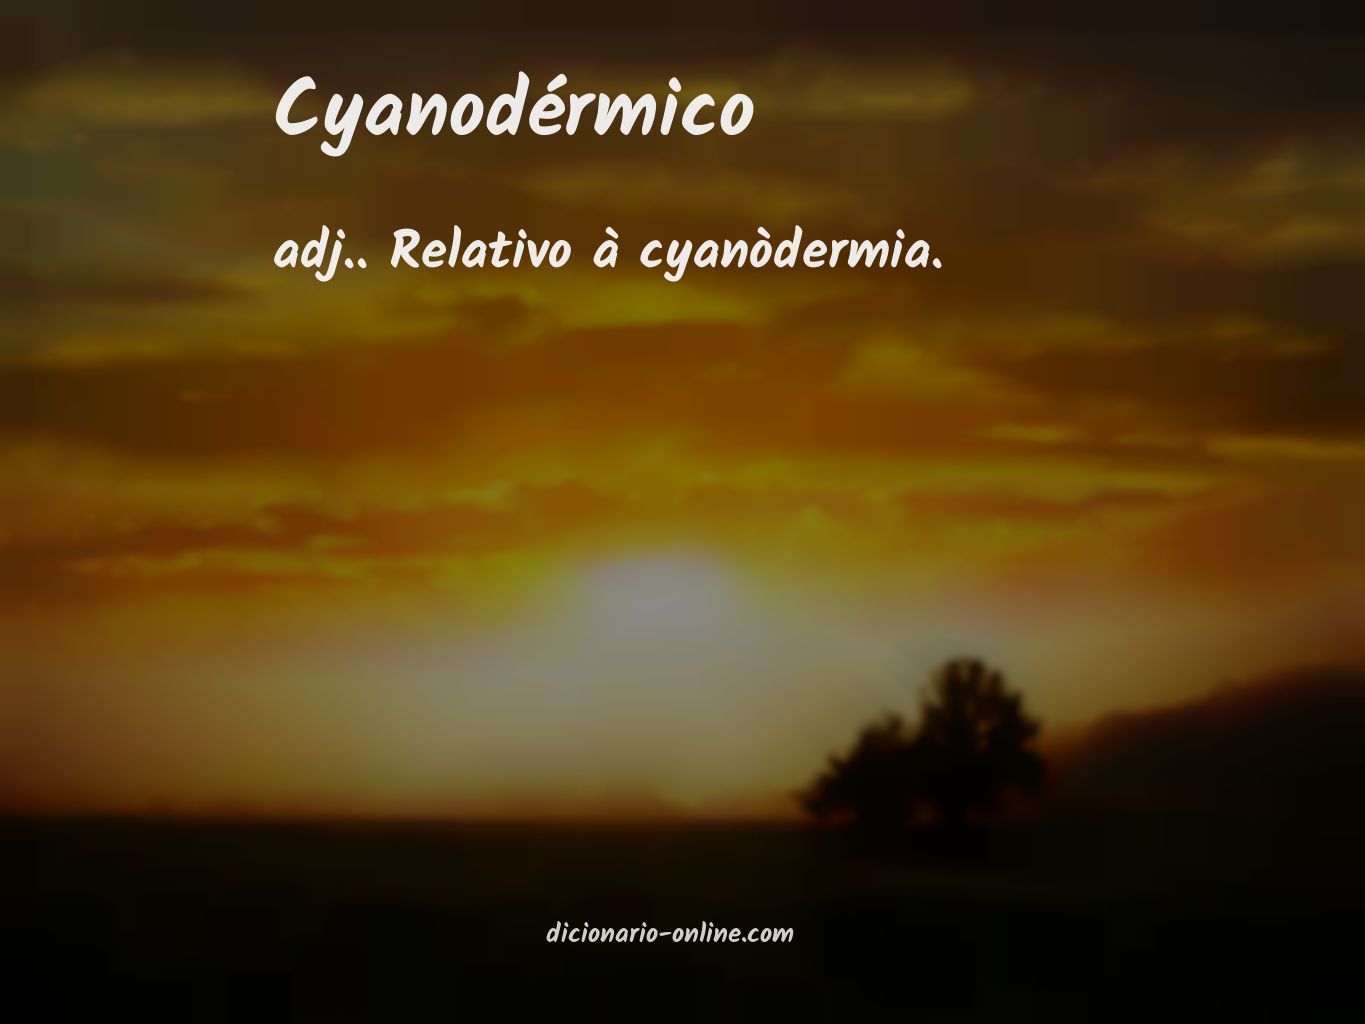 Significado de cyanodérmico